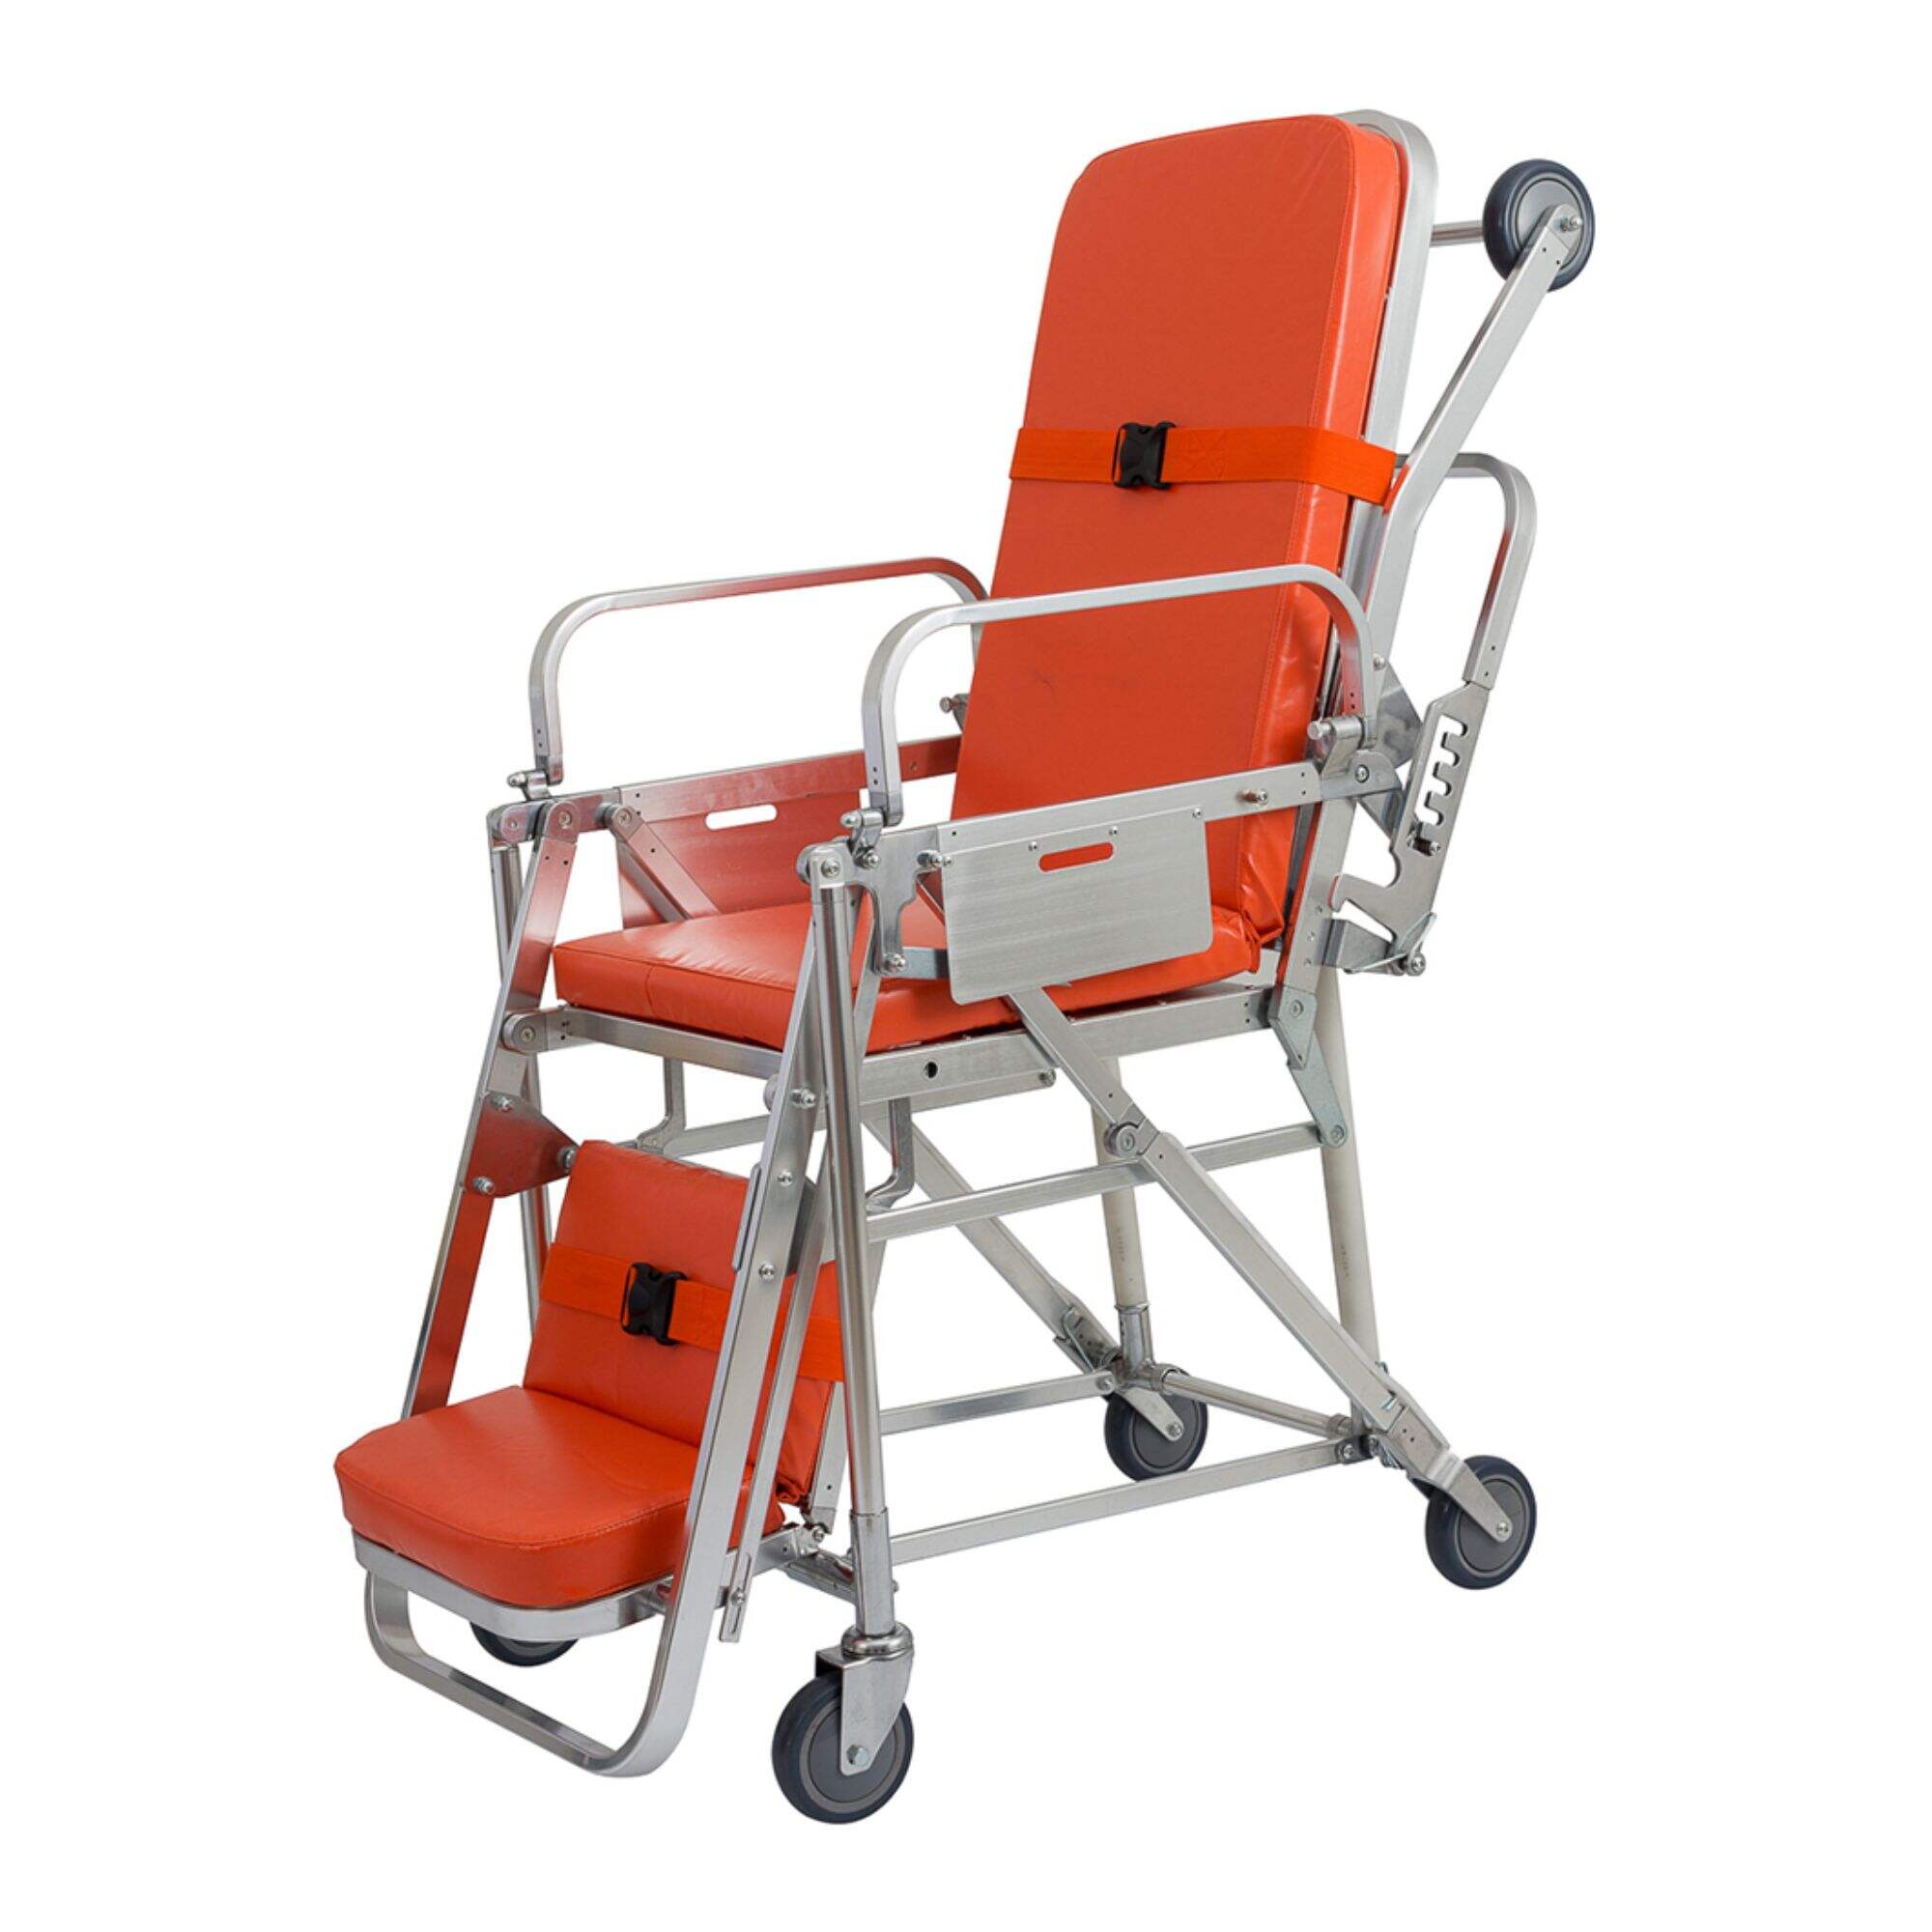 YFTA-CH3 Ambulance Chair Stretcher Trolley